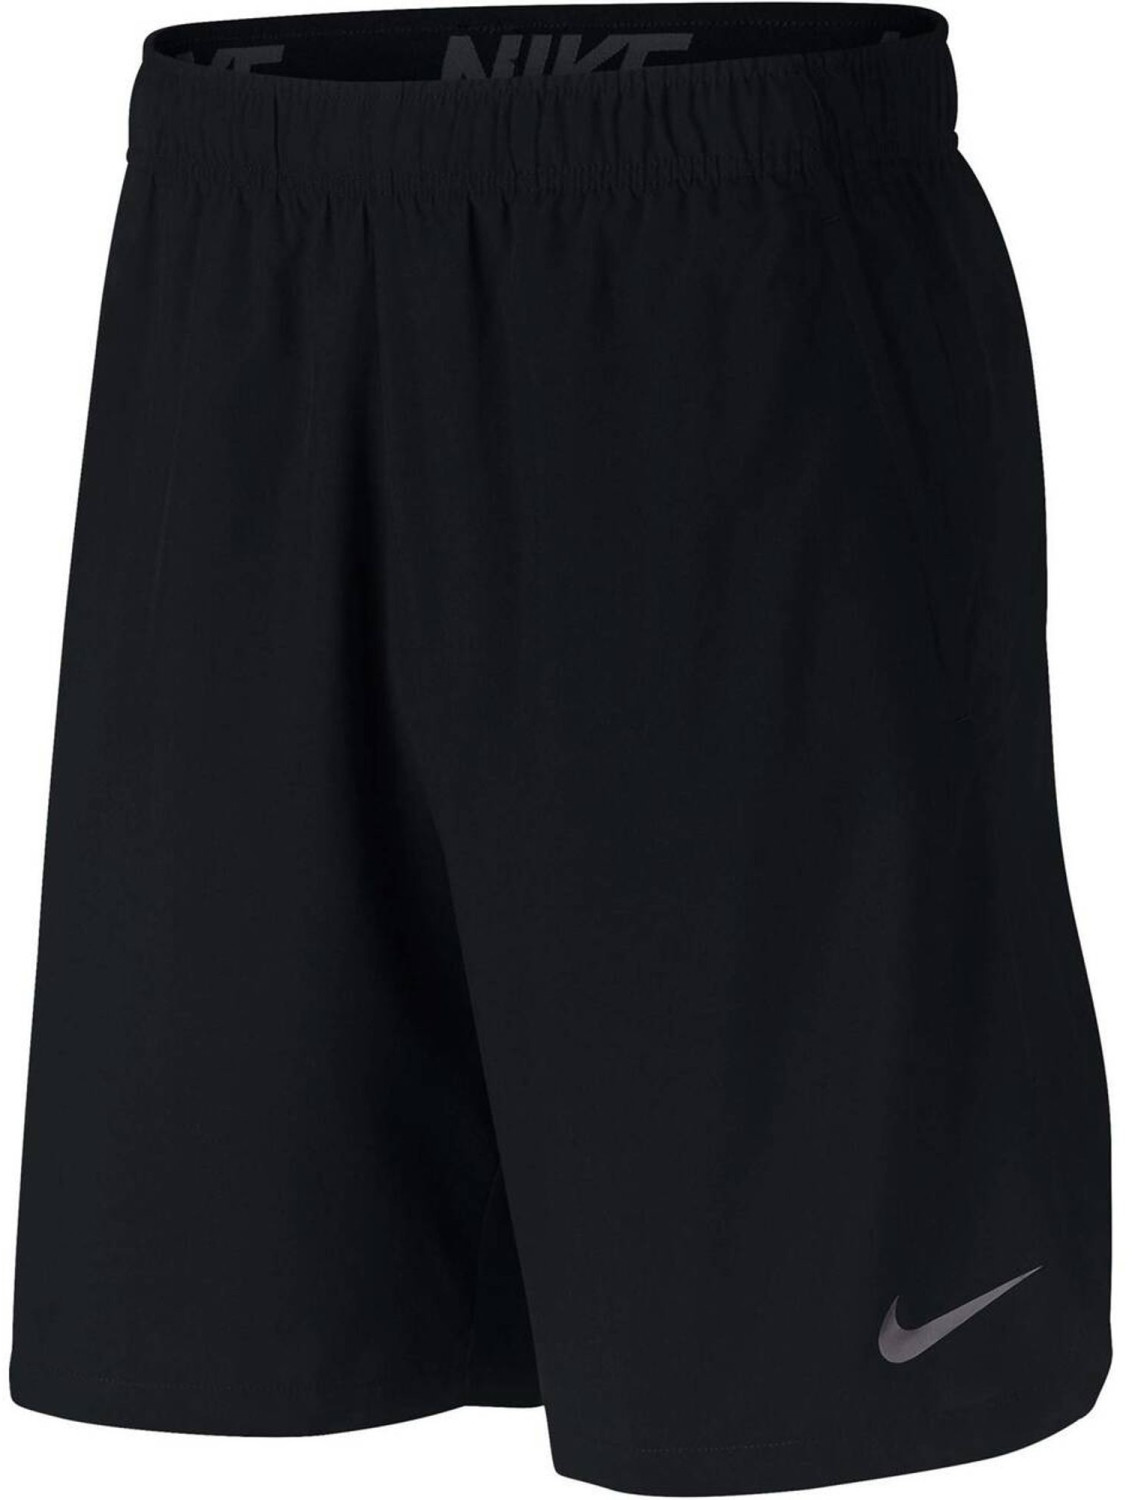 Nike Flex Men's Woven Training Shorts (927526) black/dark grey